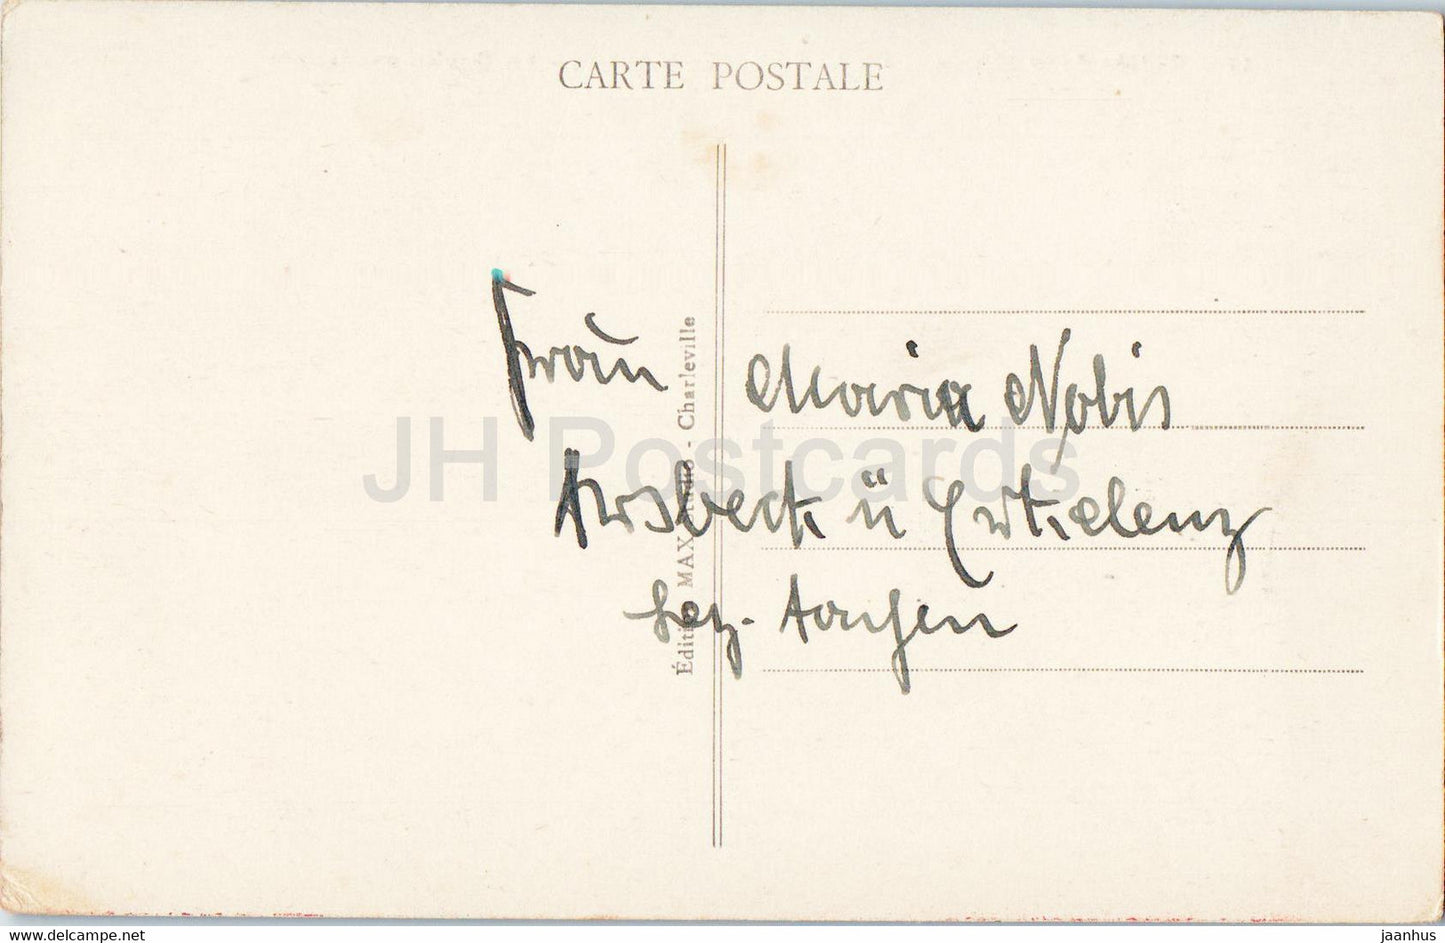 Vallee de la Meuse - Chateau Regnault - La Roche mouvante - 11 - old postcard - France - used